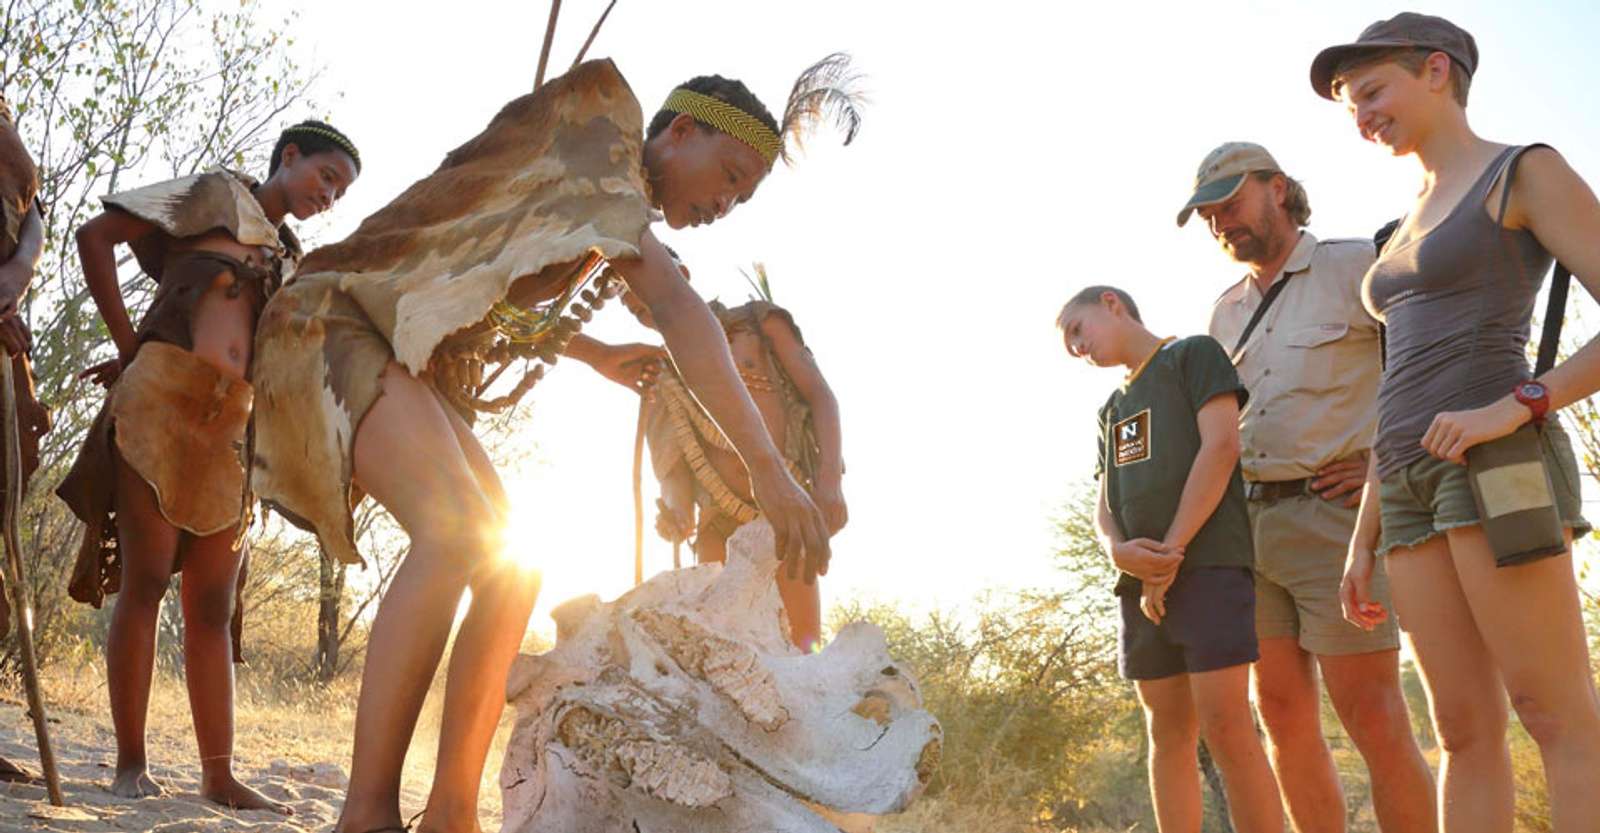 Kalahari bushmen and Nat Hab guests, Meno a Kwena, Botswana.